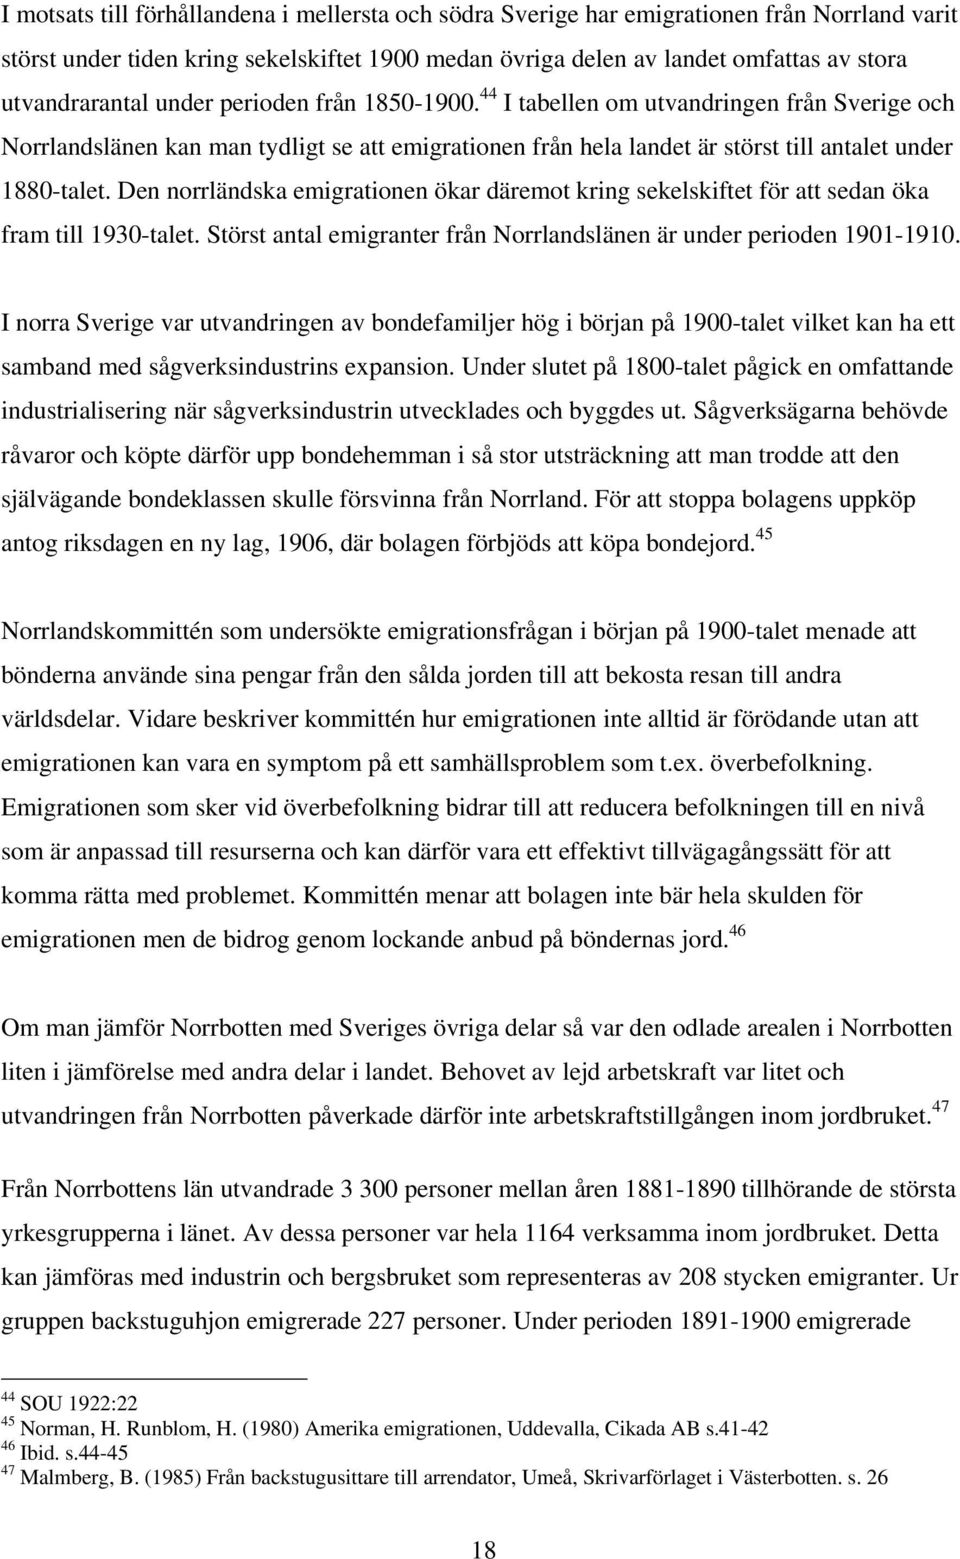 44 I tabellen om utvandringen från Sverige och Norrlandslänen kan man tydligt se att emigrationen från hela landet är störst till antalet under 1880-talet.